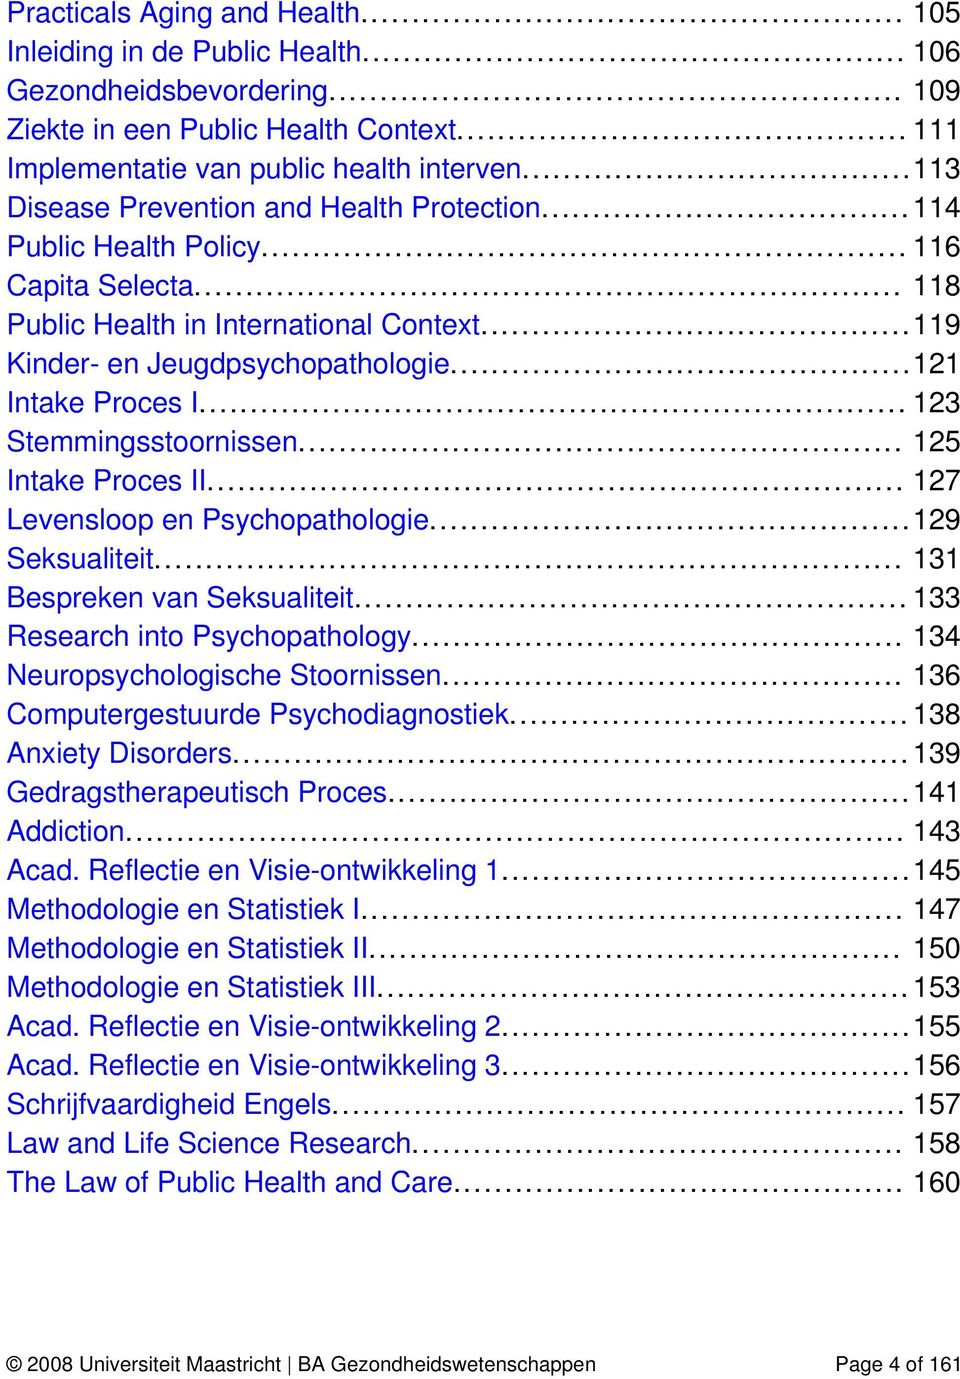 ..121 Intake Proces I... 123 Stemmingsstoornissen... 125 Intake Proces II... 127 Levensloop en Psychopathologie...129 Seksualiteit... 131 Bespreken van Seksualiteit... 133 Research into Psychopathology.